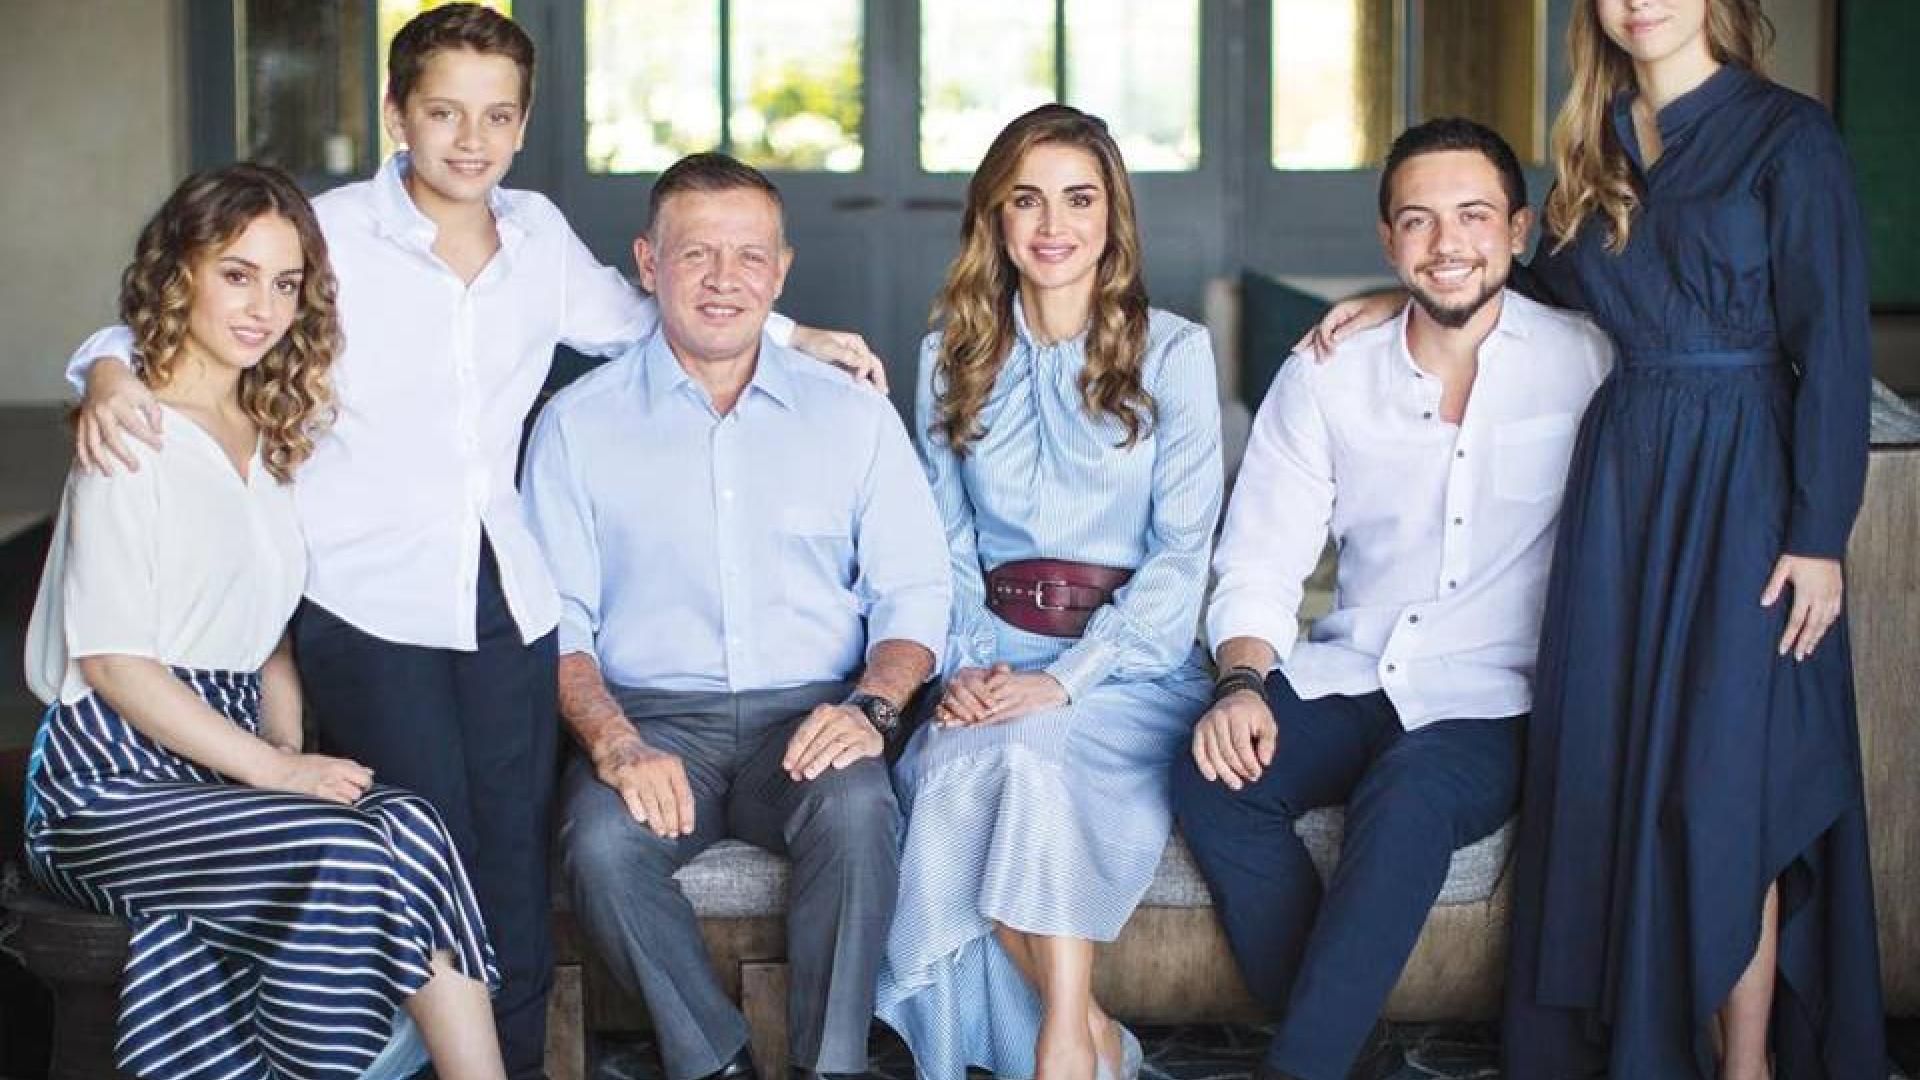 توضيح من مكتب الملكة رانيا بشأن قيمة ملابسها: التفاصيل بين أيديكم ولكم حرية التعامل